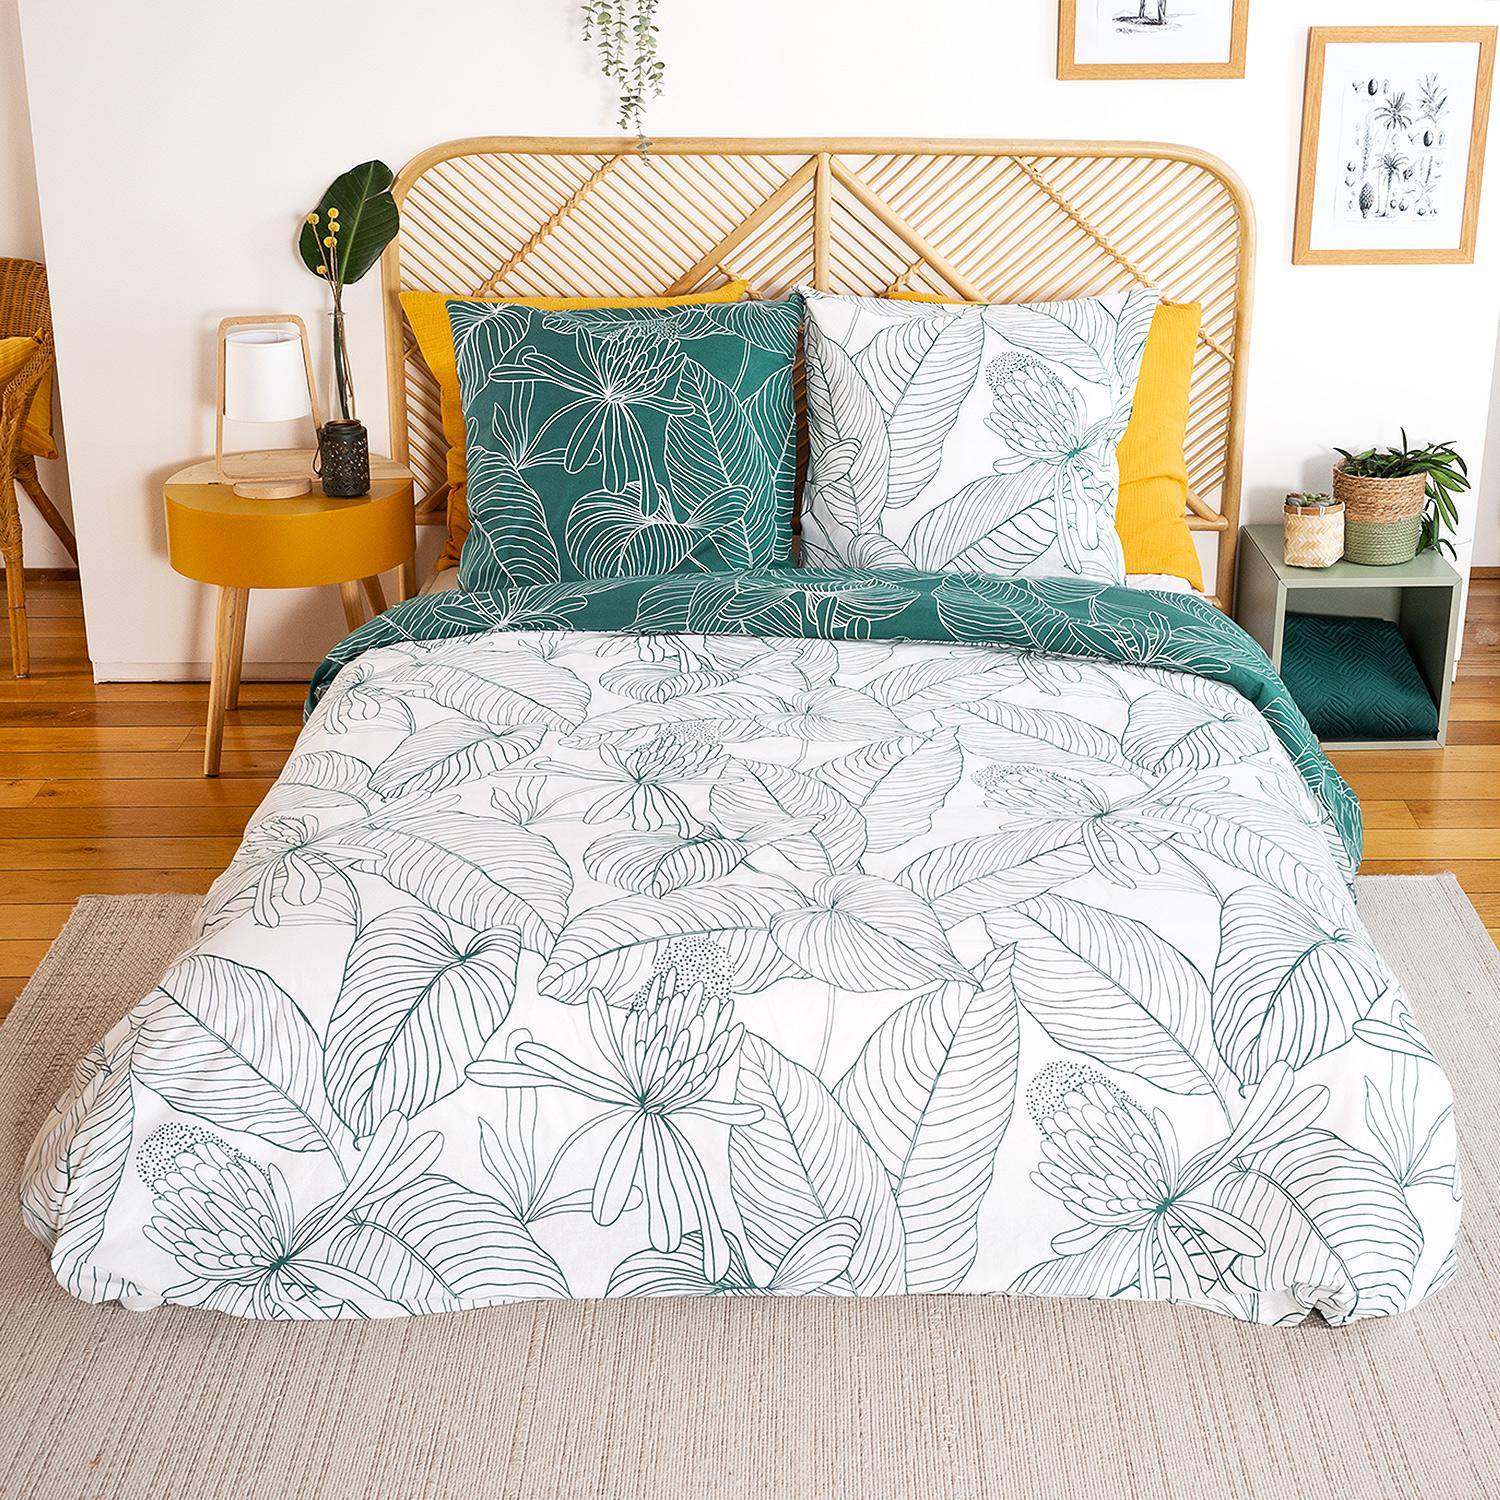 Wendebettwäsche-Set mit Blumendruck aus weicher Baumwolle, 1 Bettbezug, 2 Kissenbezüge 240x220cm -Selvia,sweeek,Photo2